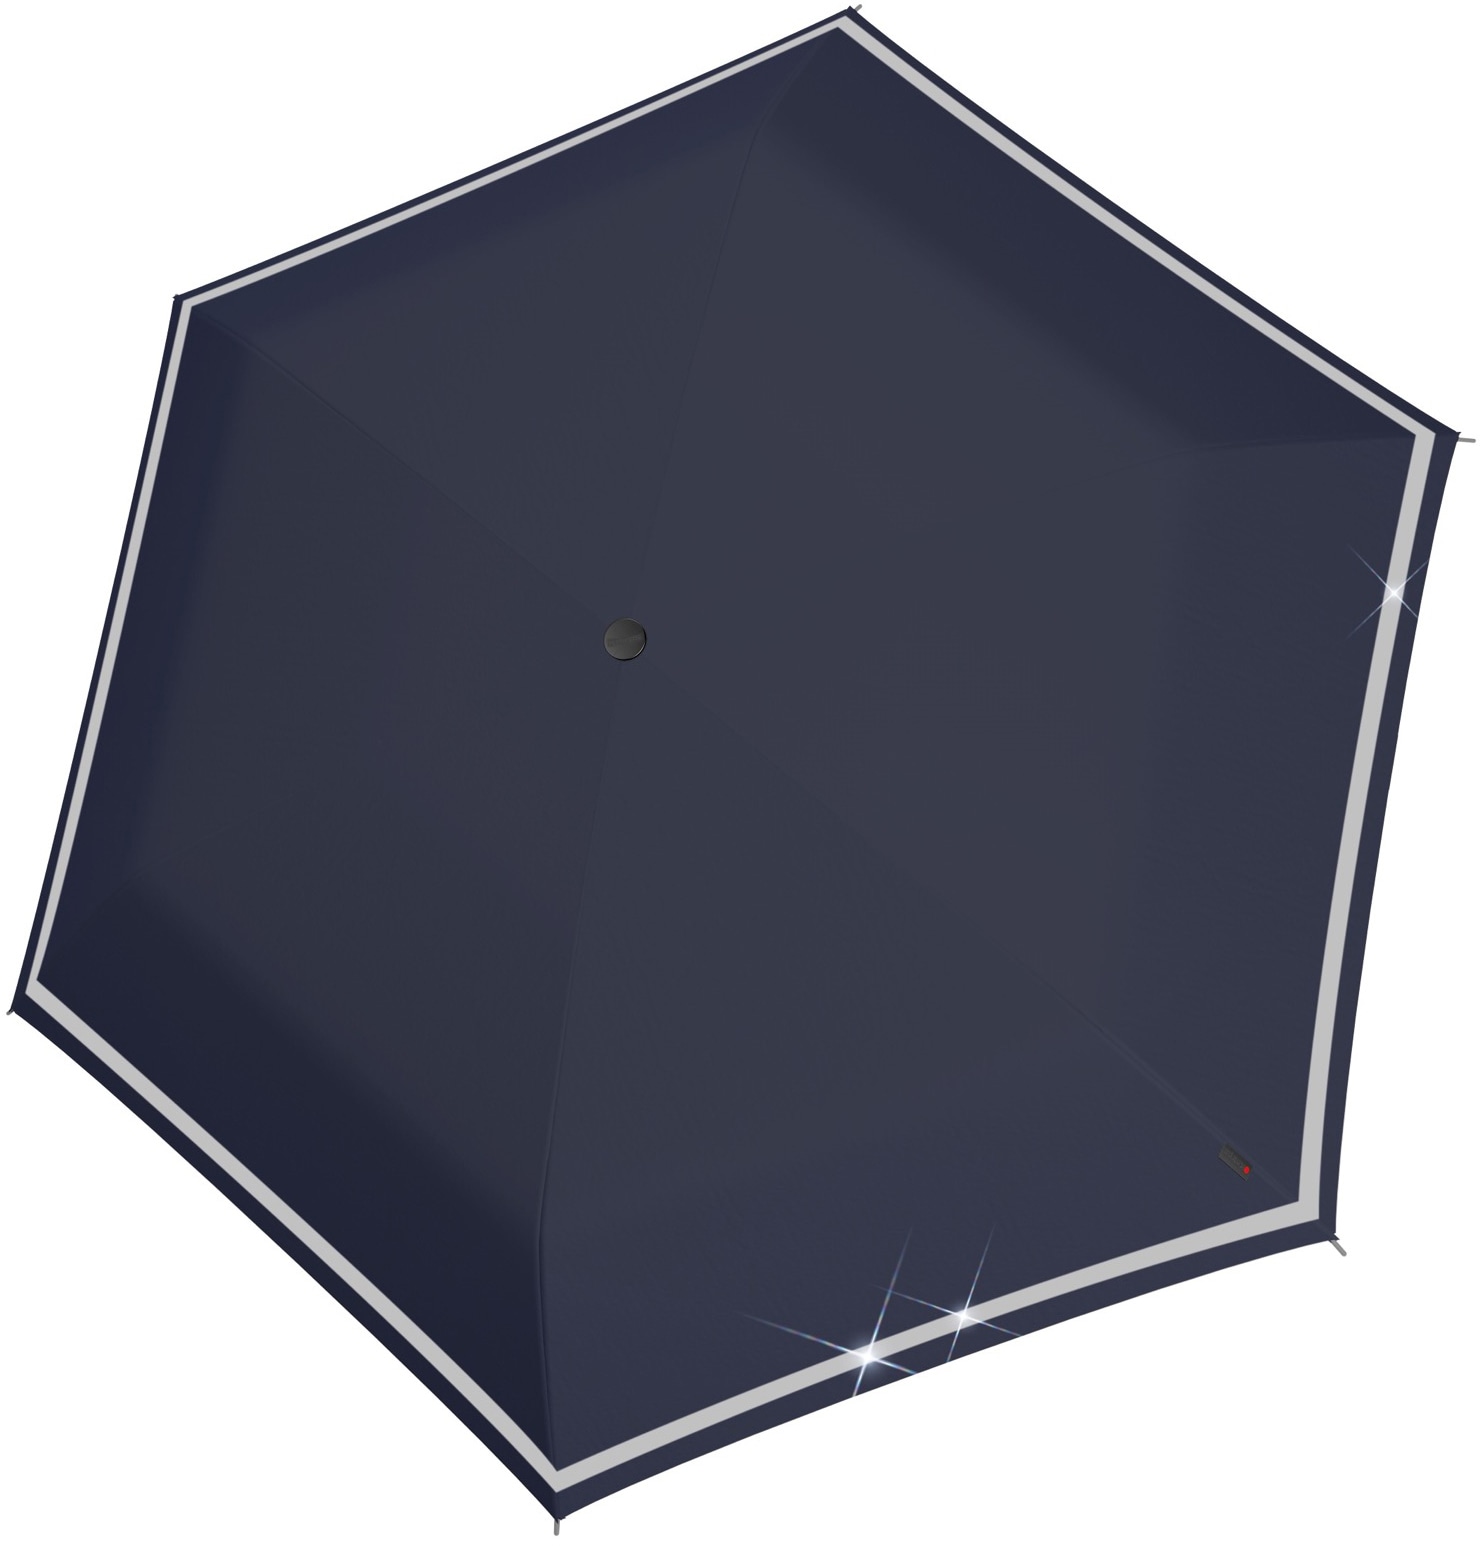 Regenschirme shoppen online